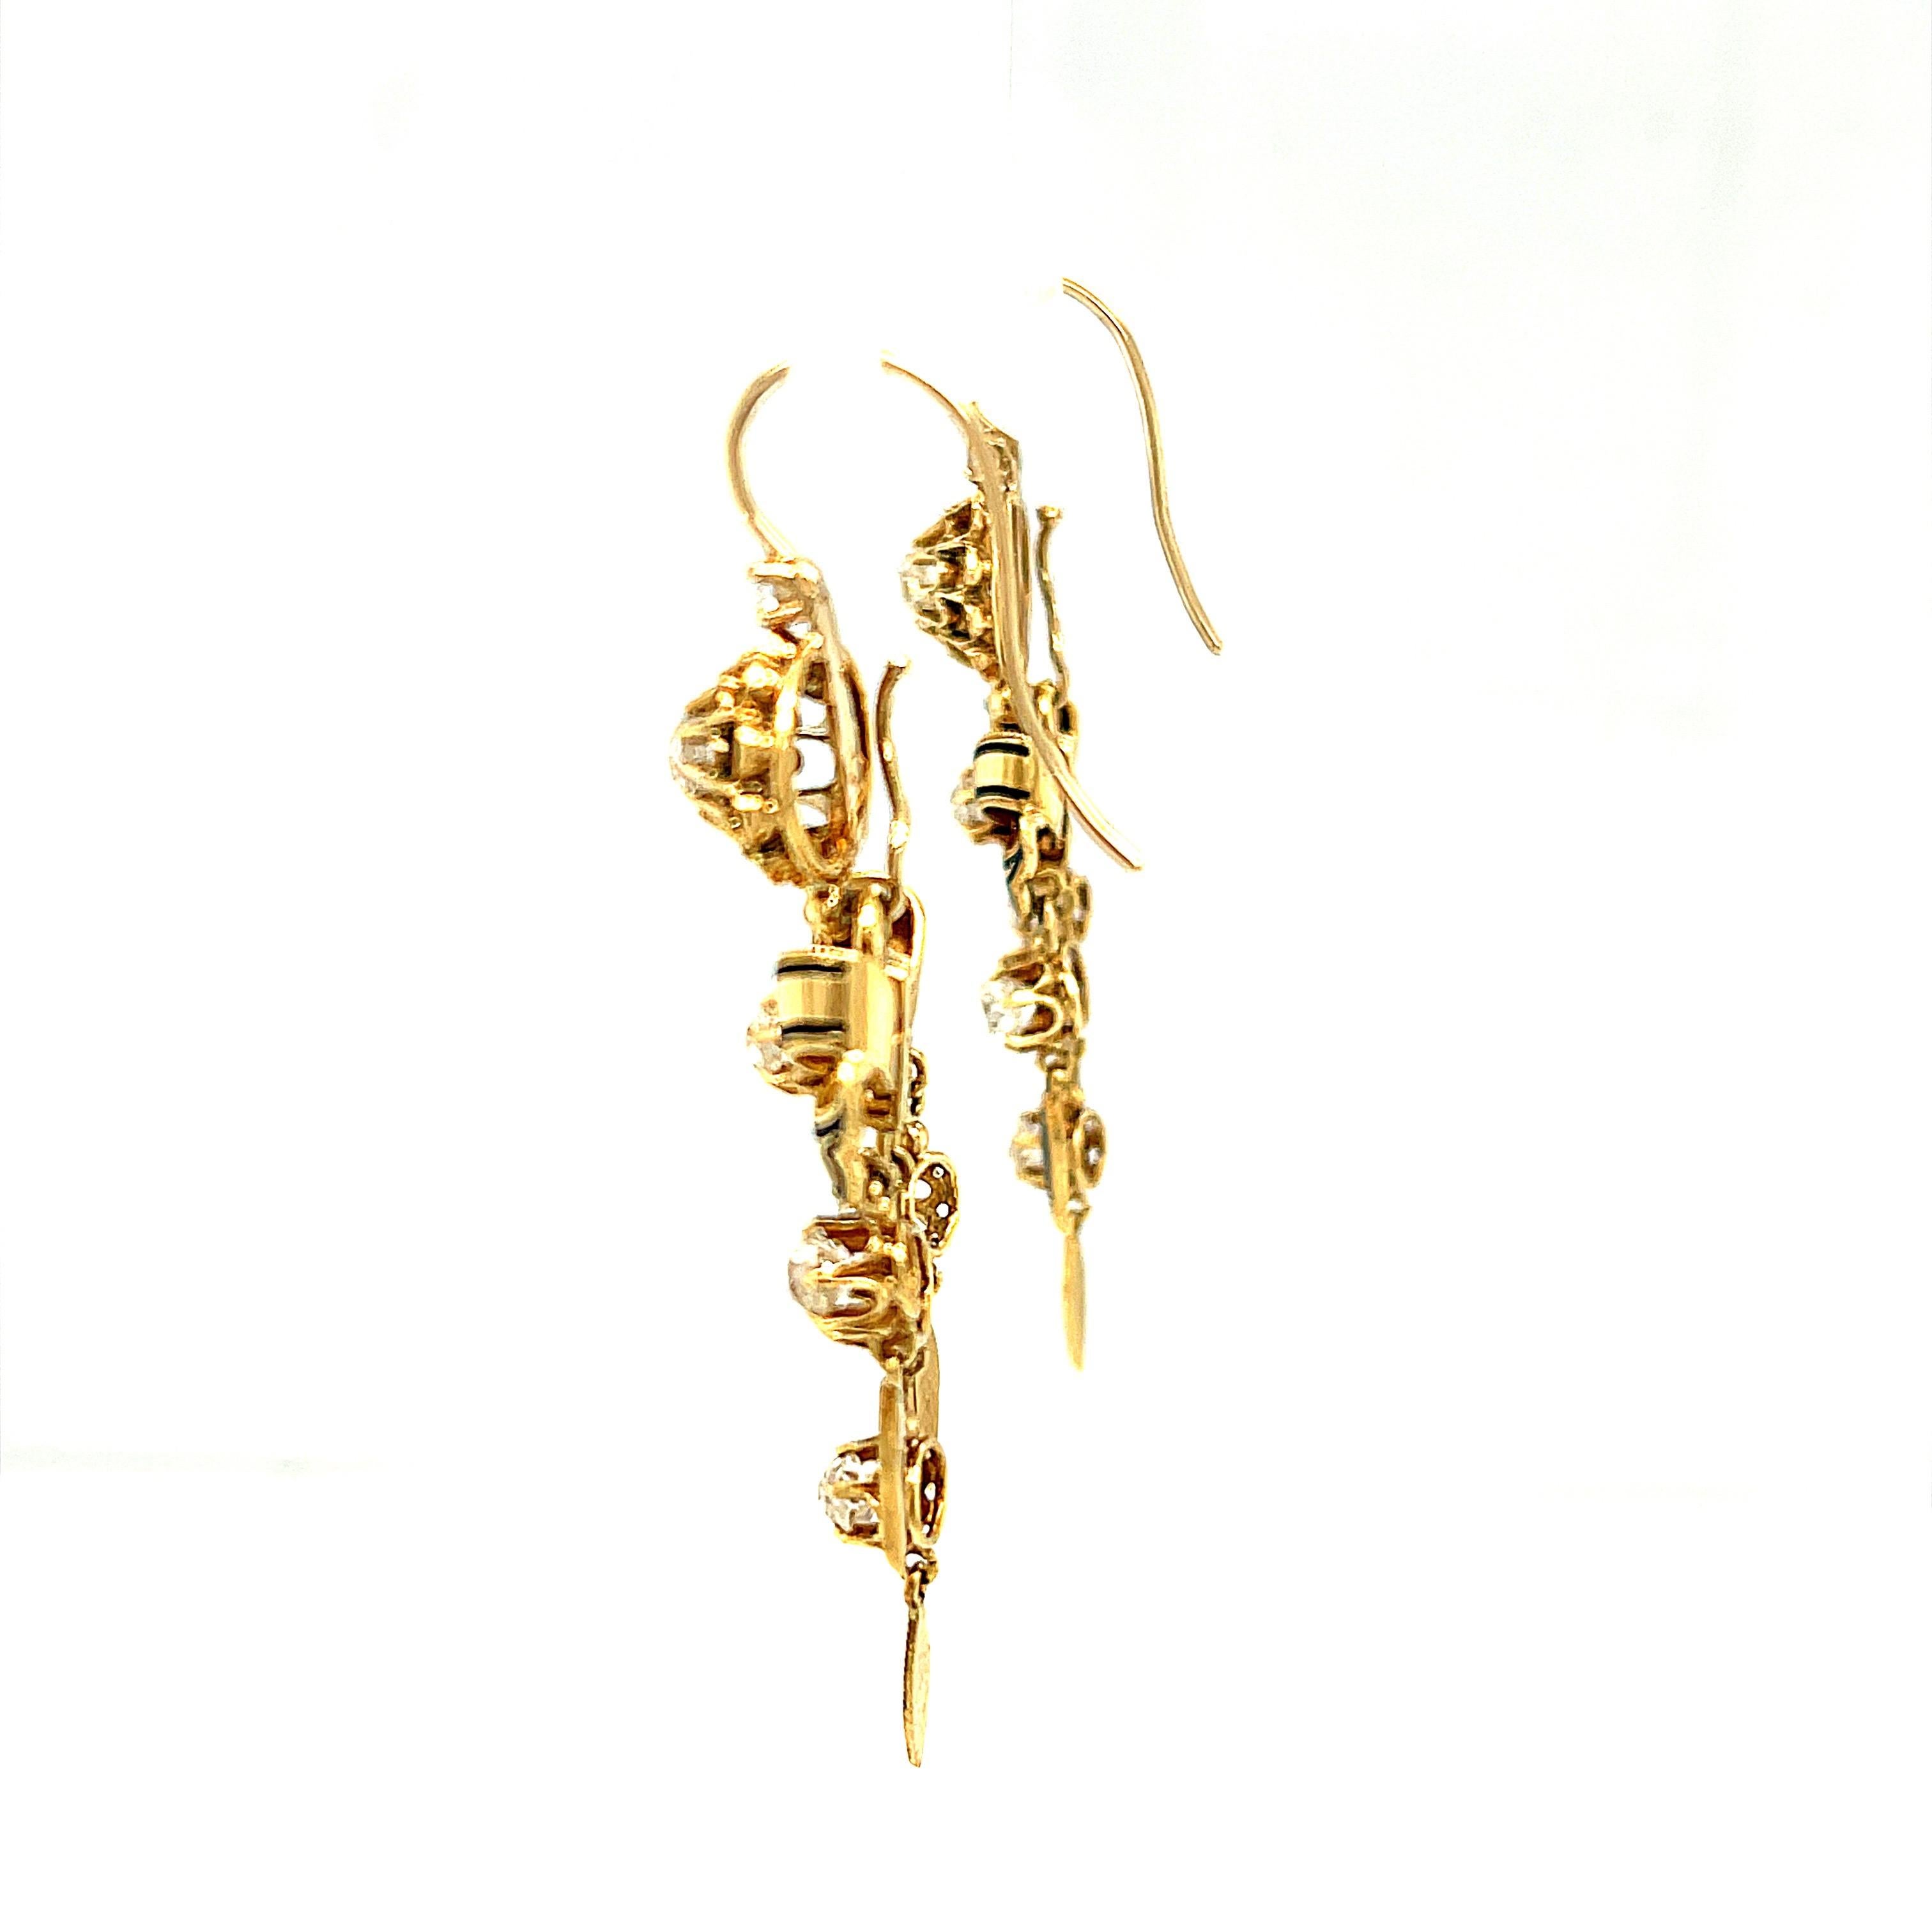 14 karat gold chandelier earrings